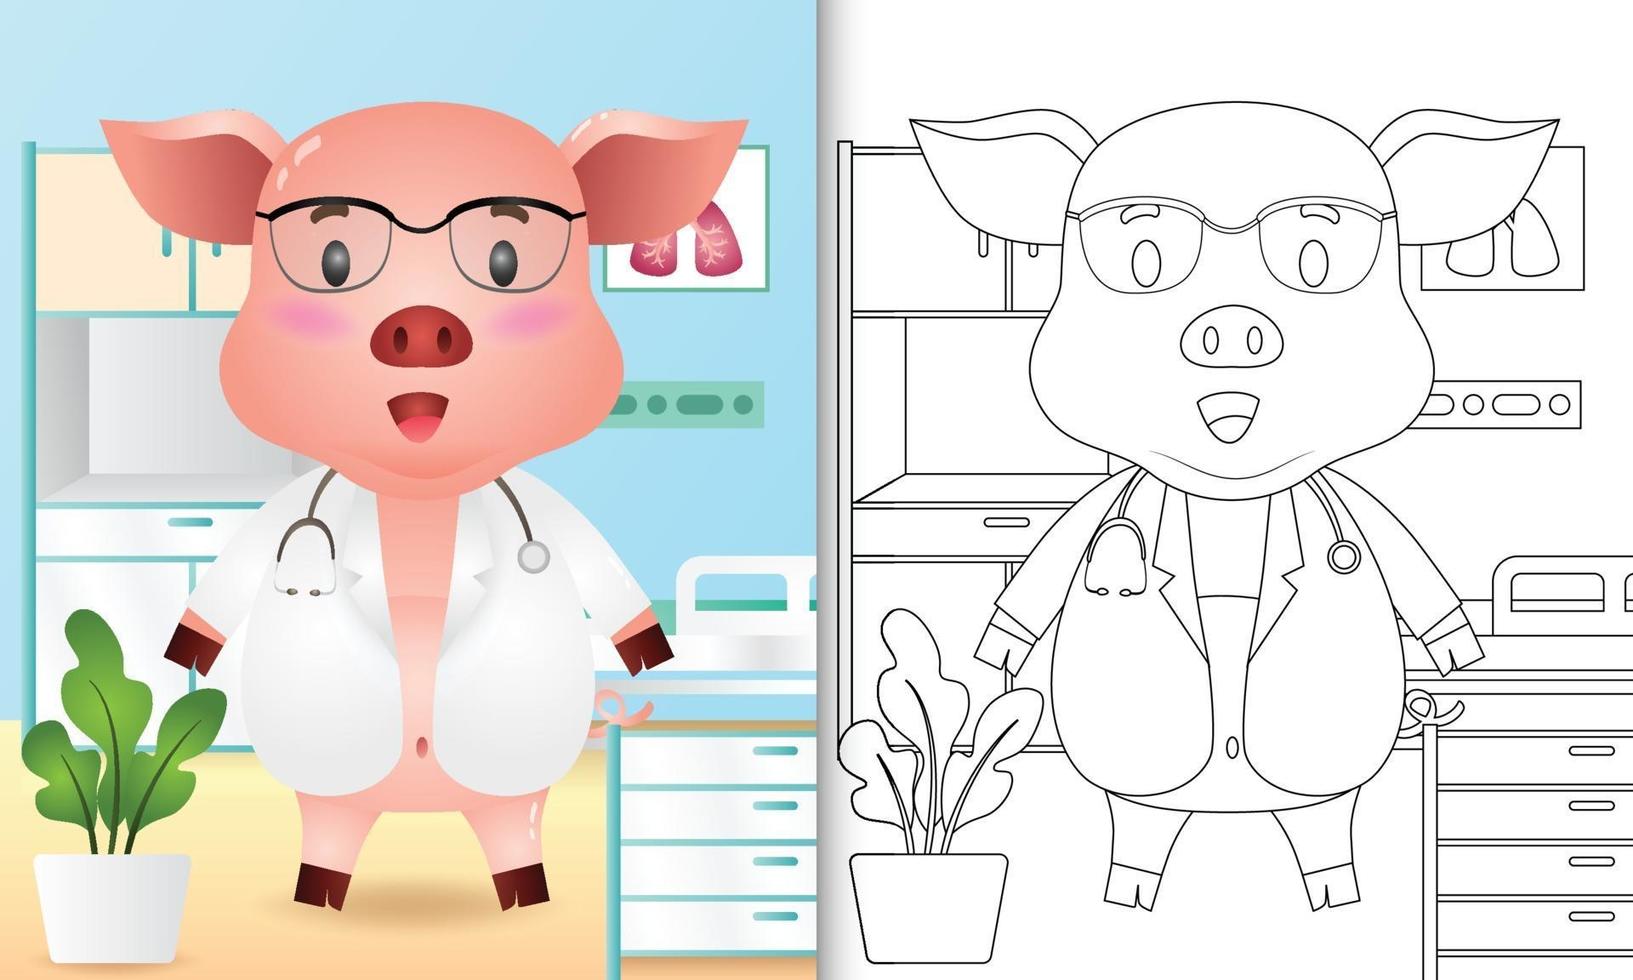 livro de colorir para crianças com uma ilustração de um médico porco fofo vetor